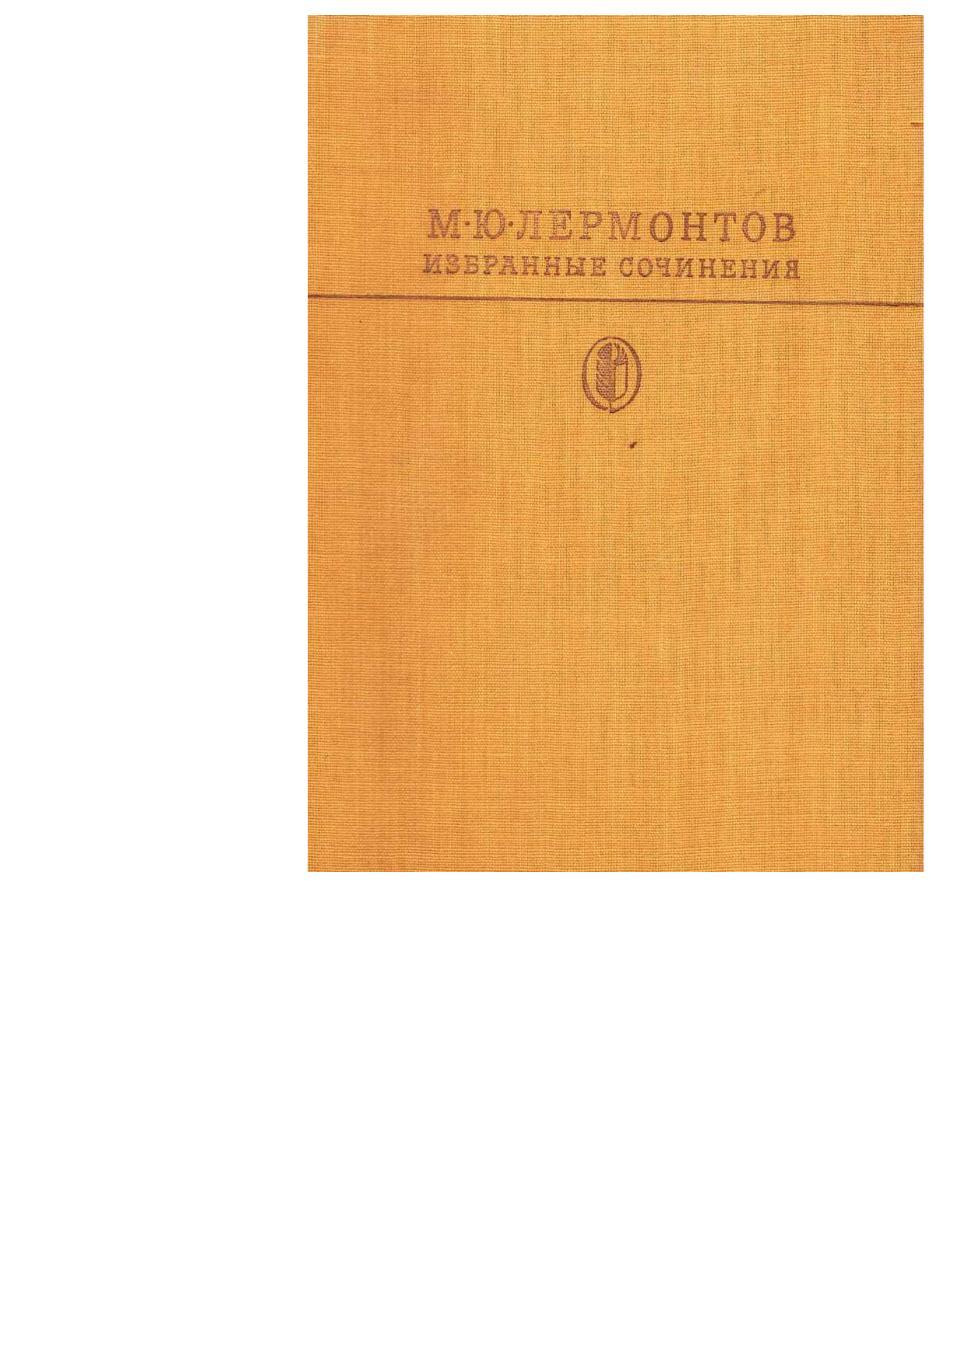 Лермонтов М.Ю. Избранные сочинения. – М., 1983. Библиотека классики.